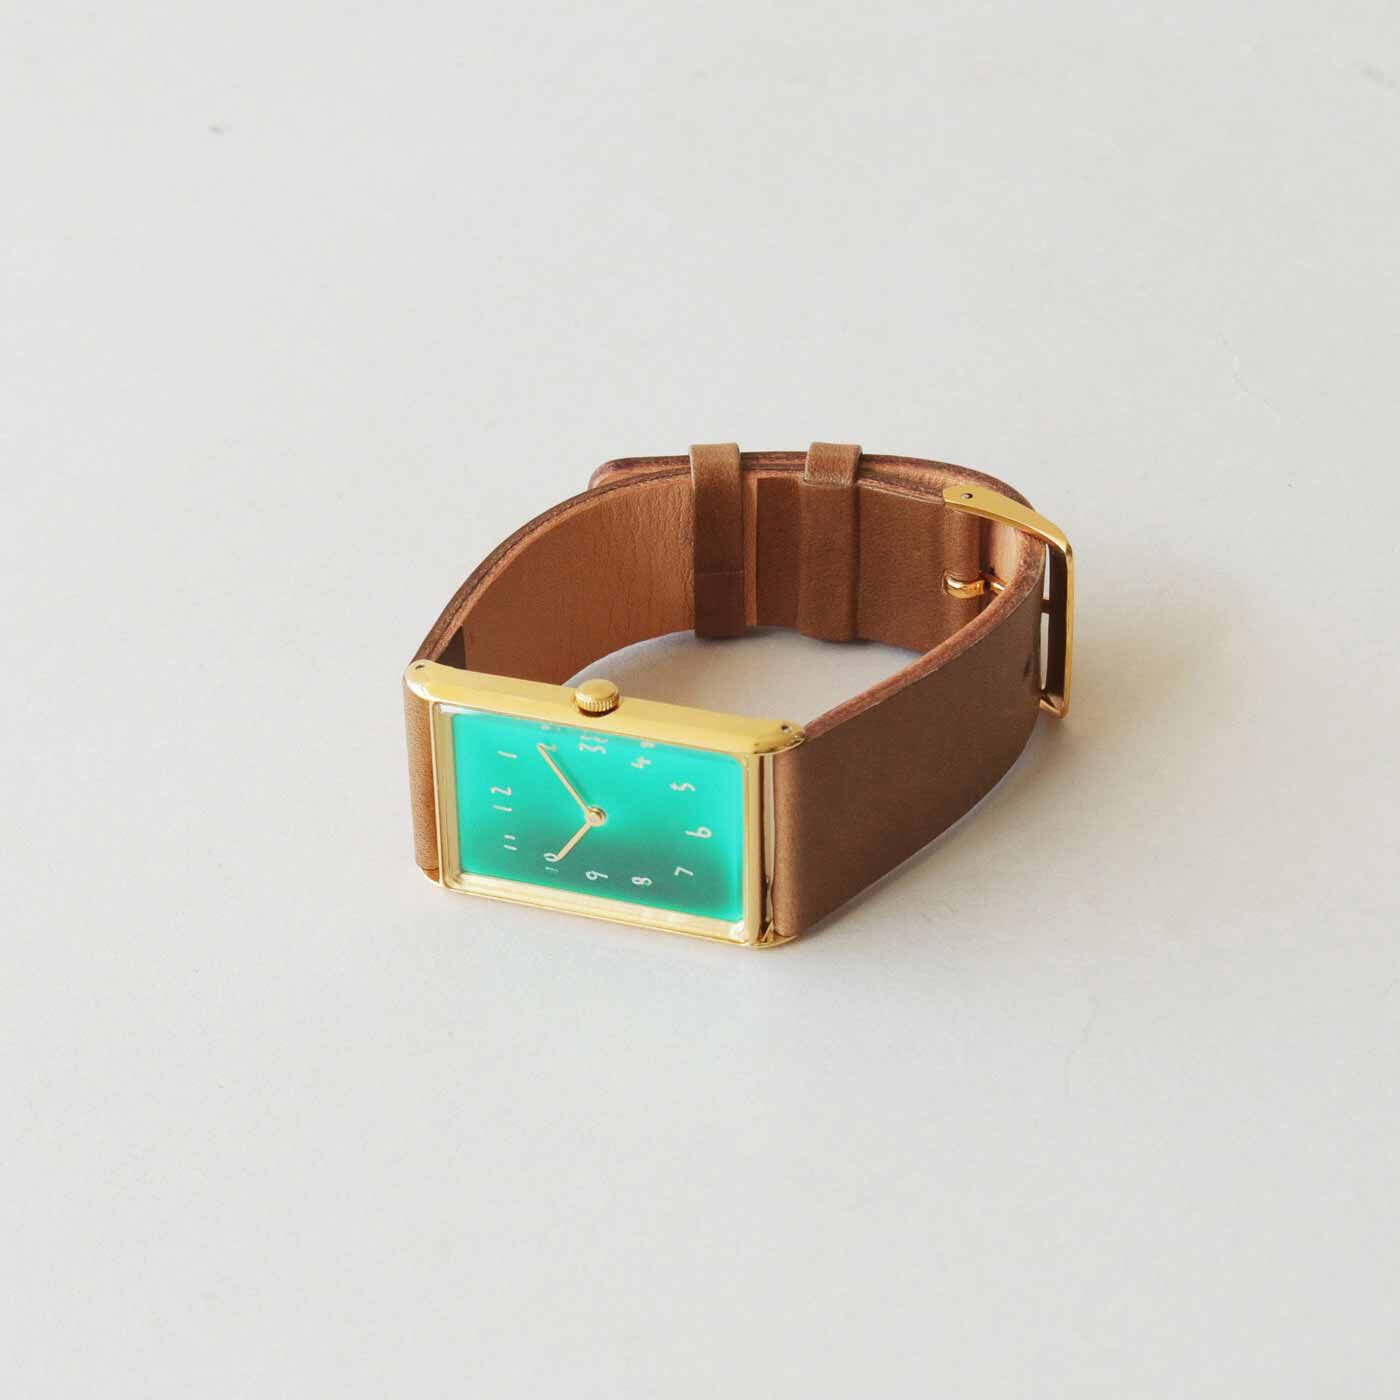 ＆Stories|金沢の時計職人が手掛けた 聖なる泉の翠色に見惚れる腕時計〈ブラウン〉[時計：日本製]|文字盤の下地に純銀メッキできらめきを忍ばせるなど、細部まで手の込んだつくりです。